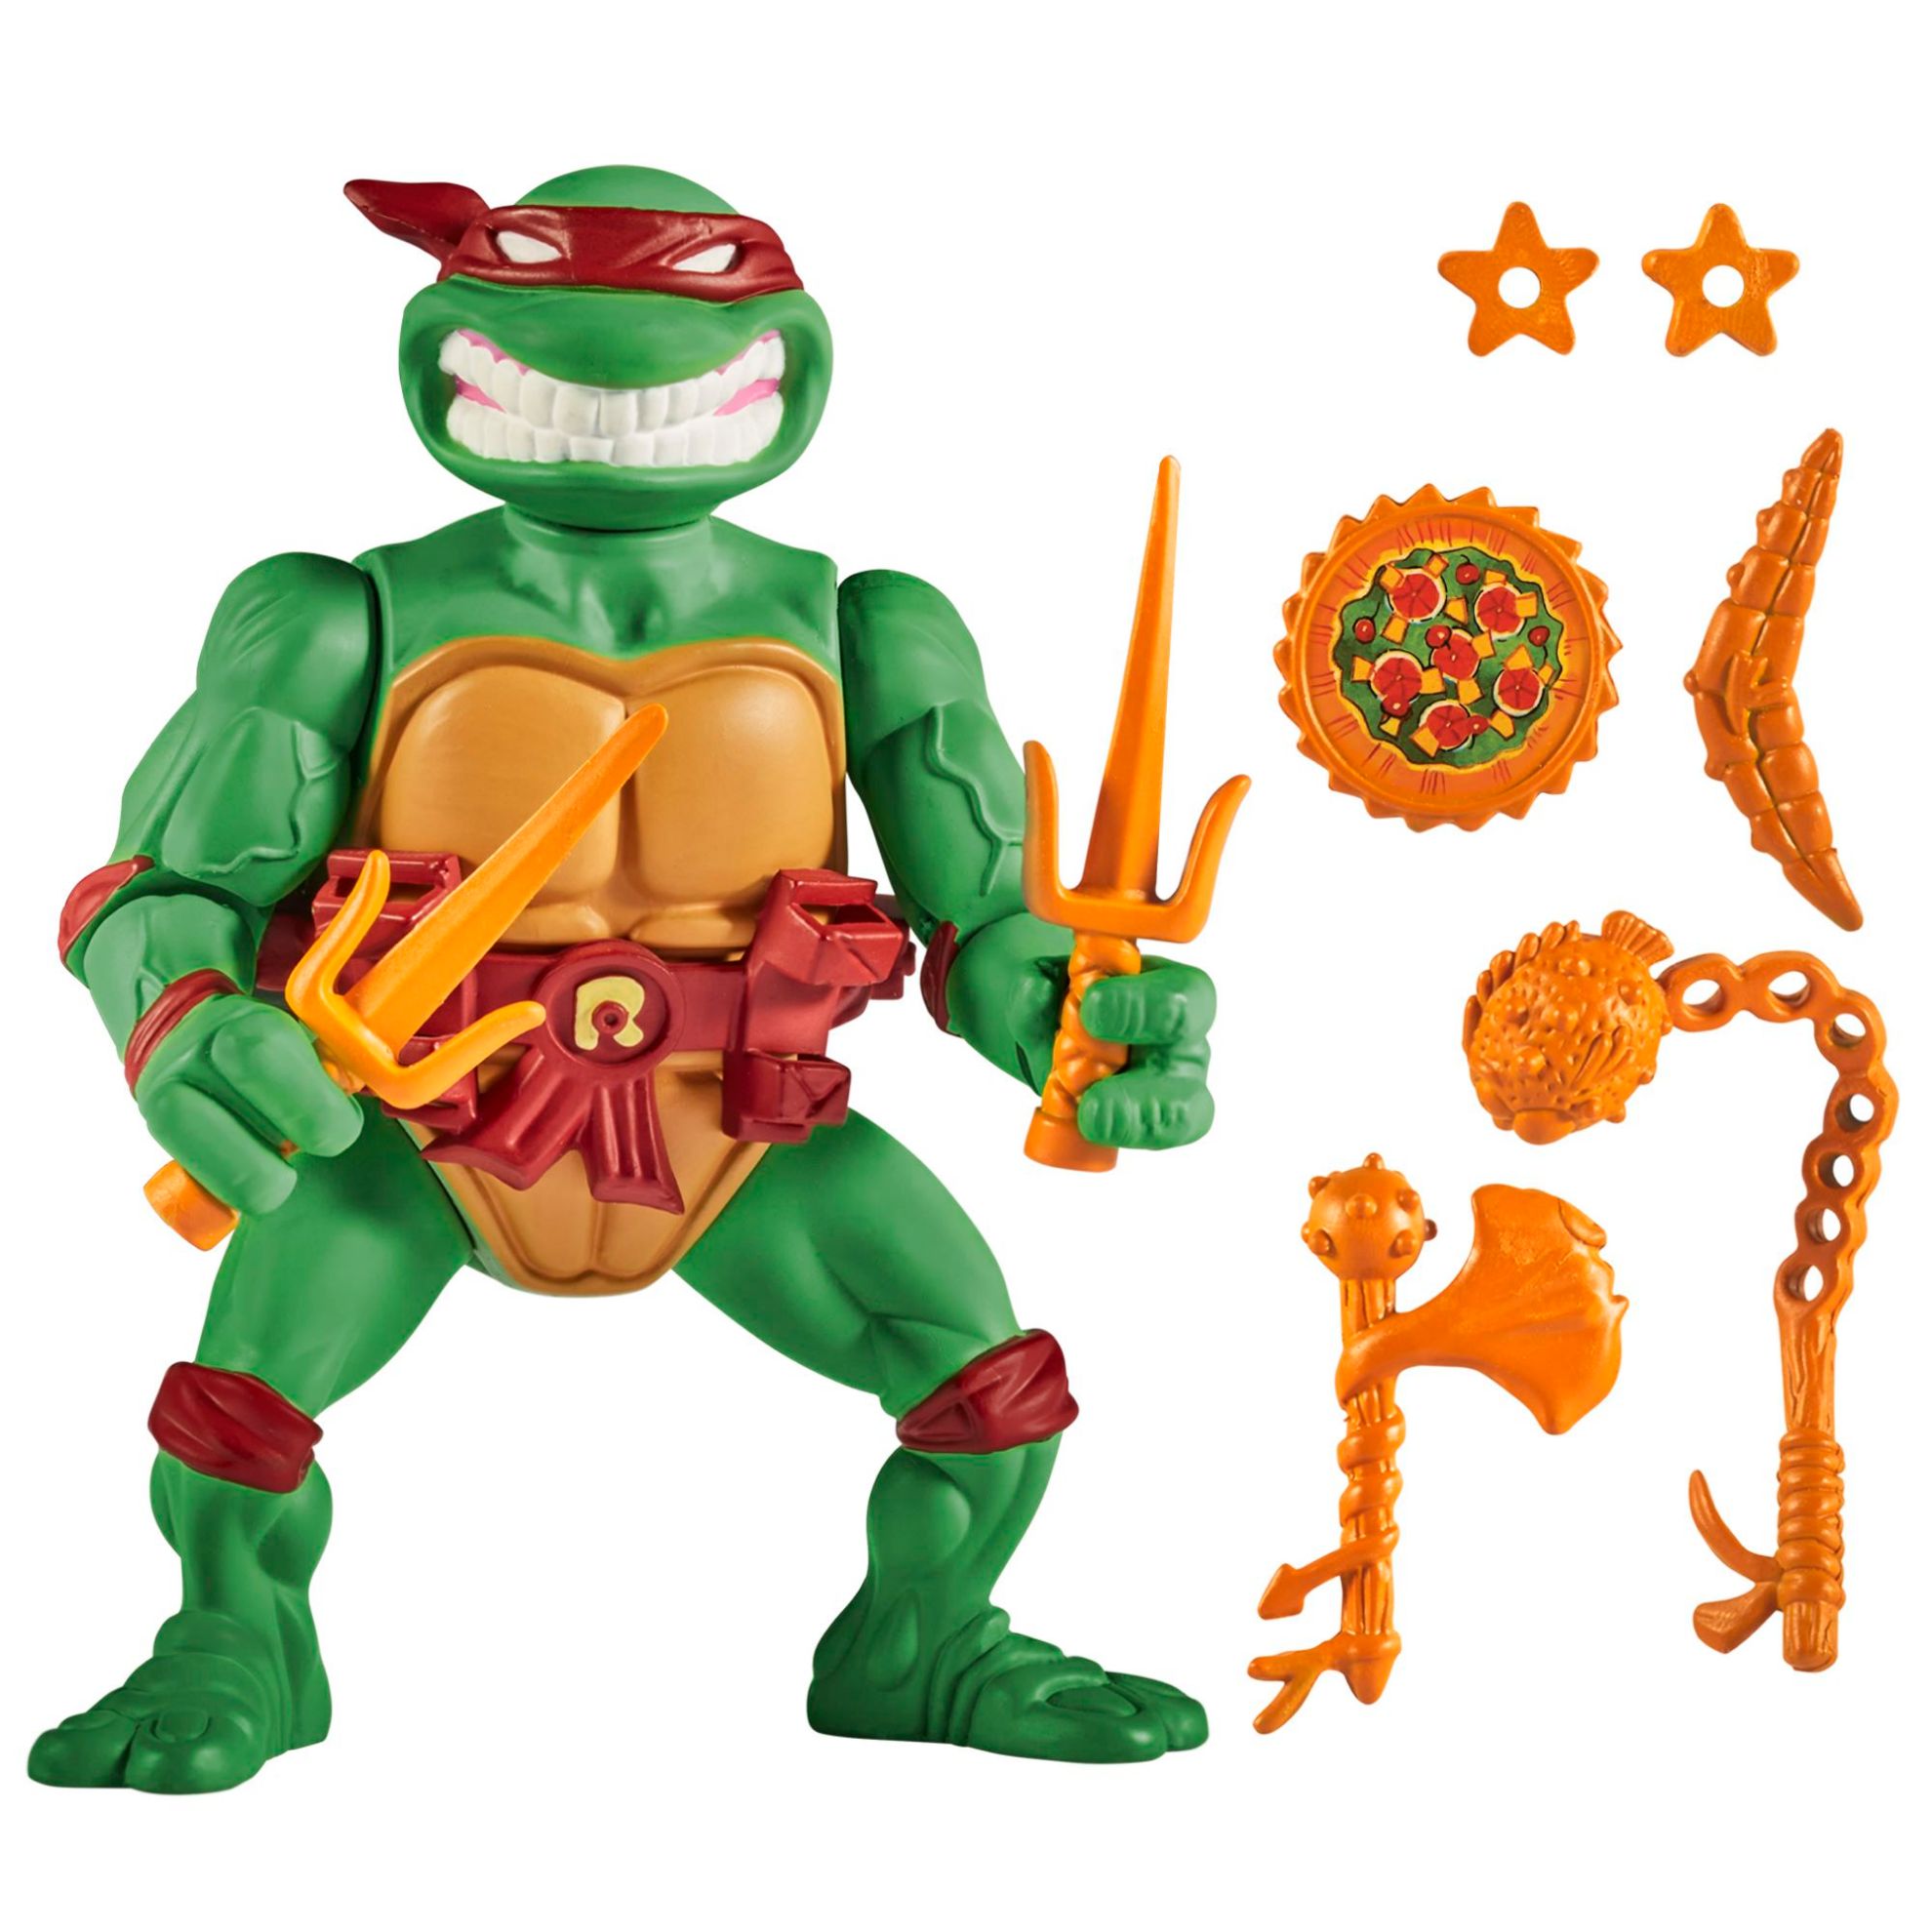 Teenage Mutant Ninja Turtles - Raphael with Storage Shell